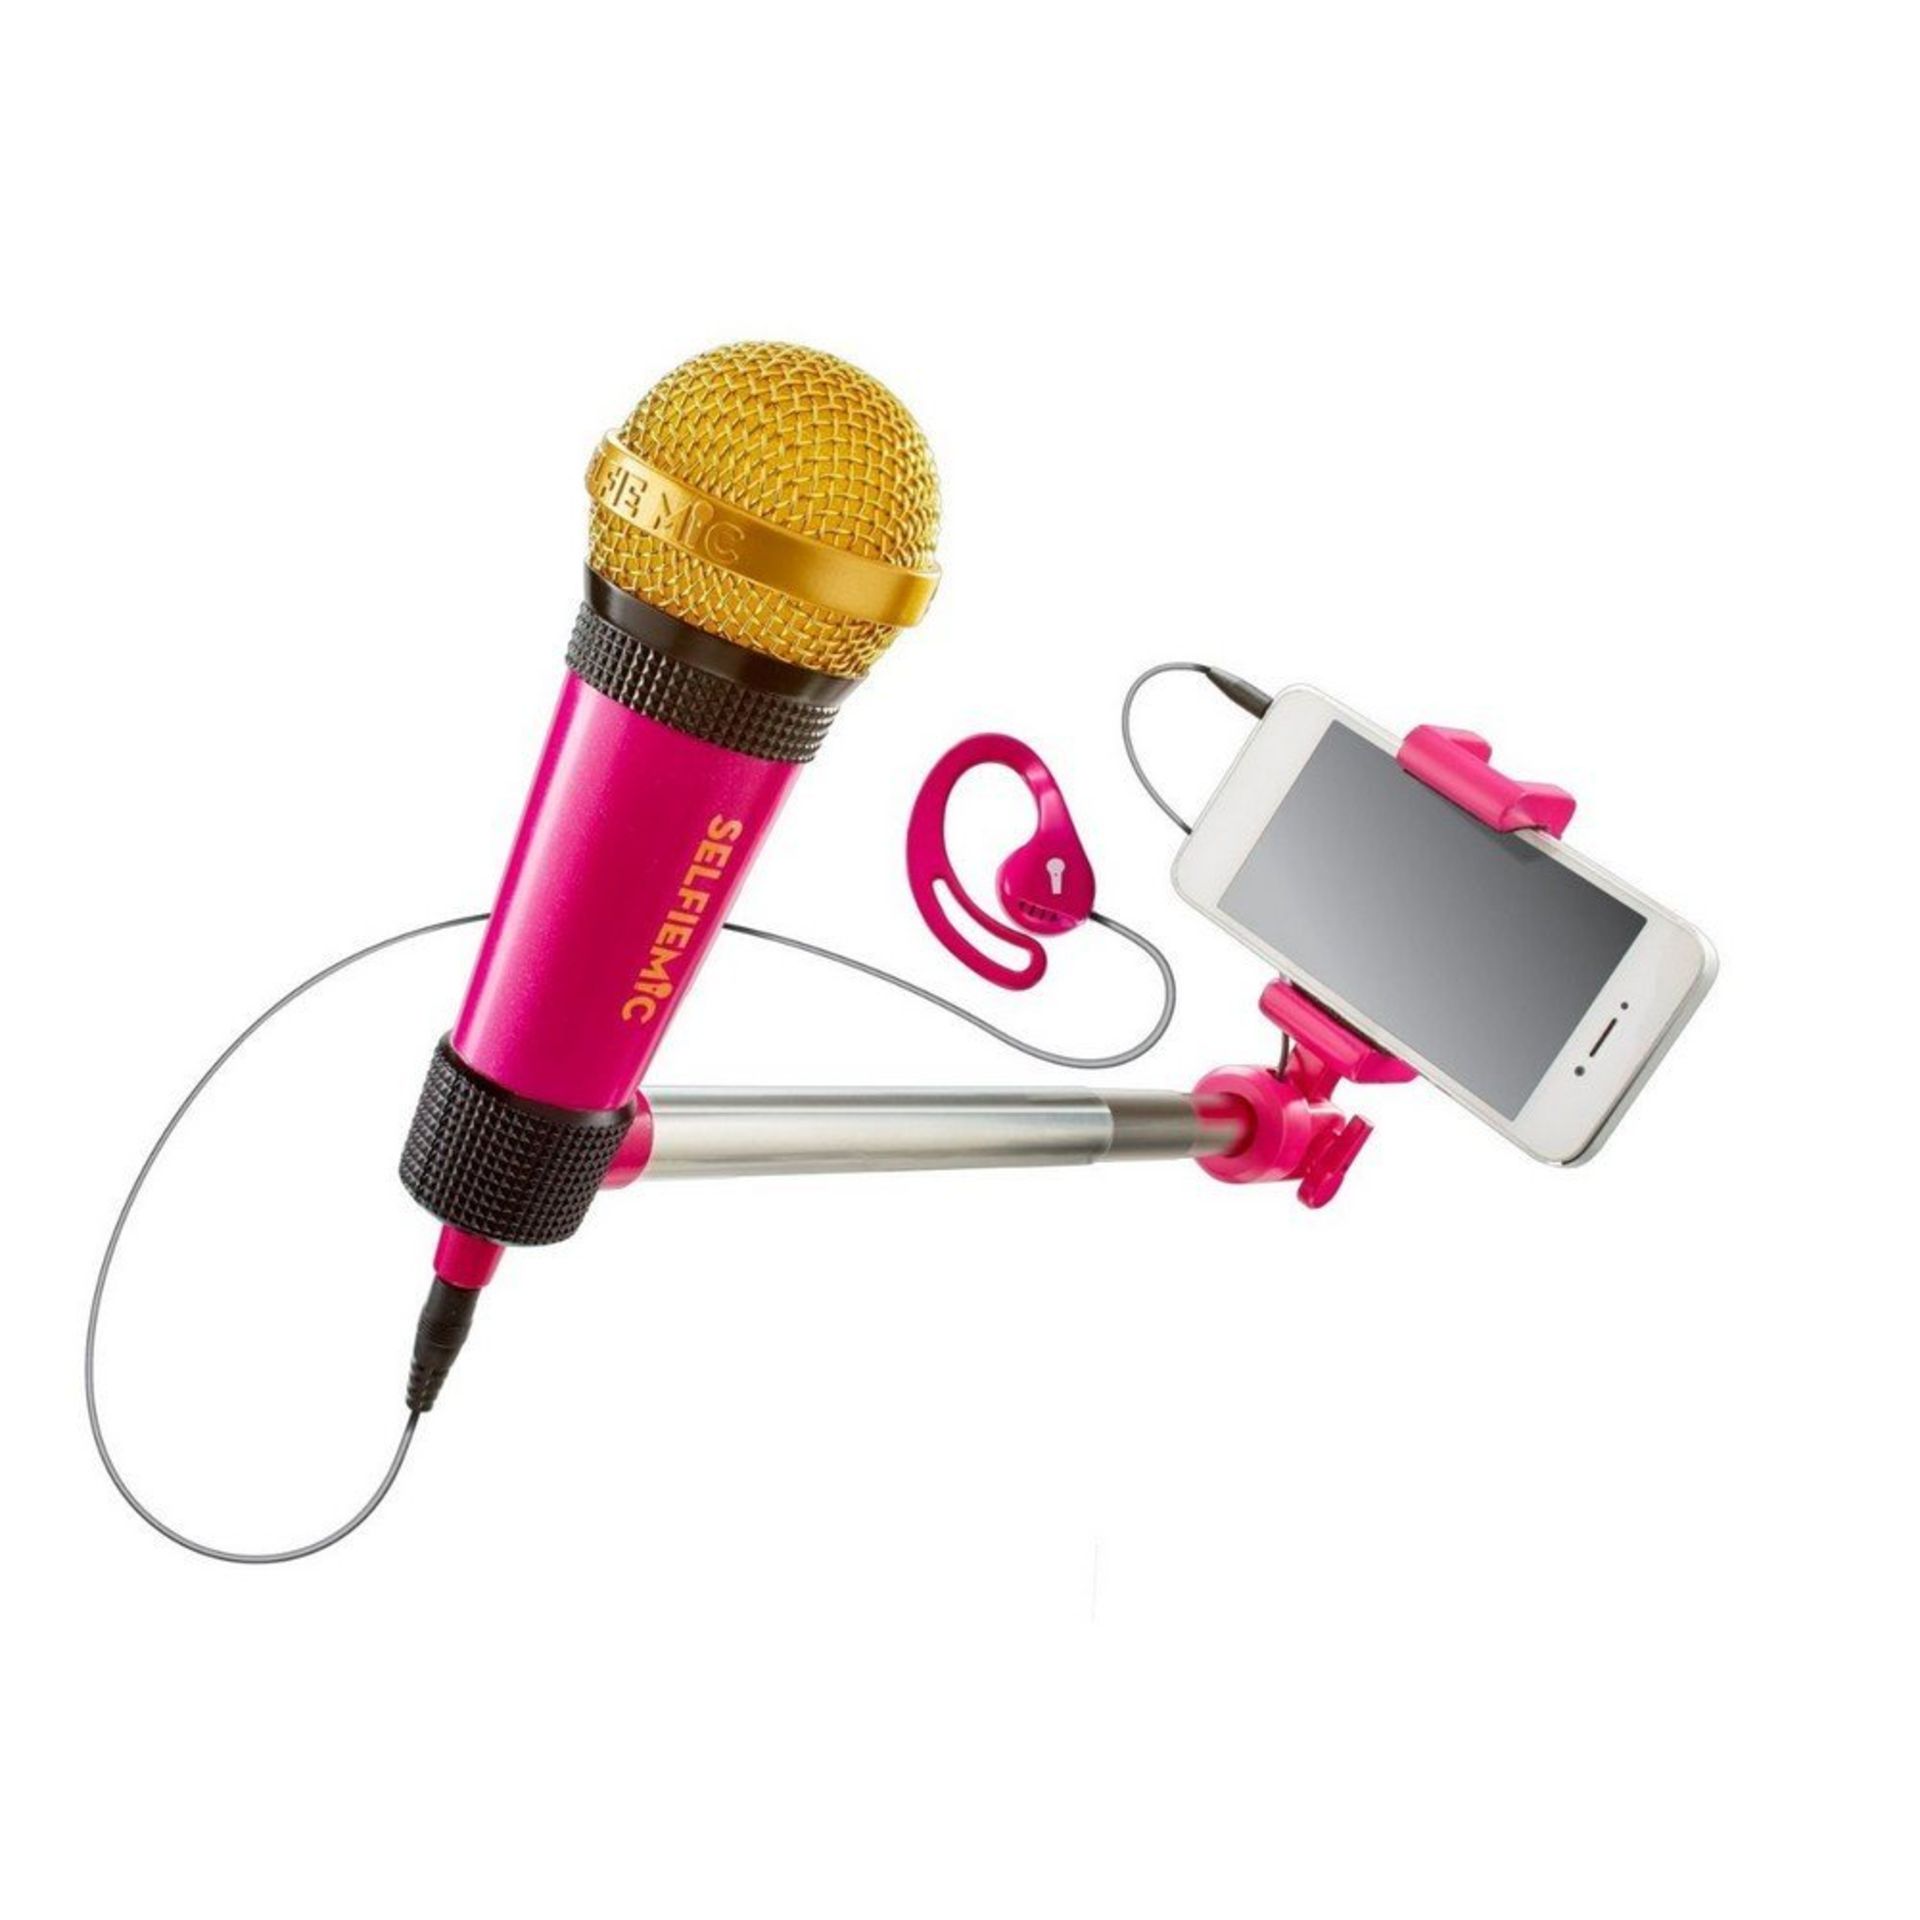 135 x SelfieMic Selfie Stick Microphone - Pink RRP £2698.65